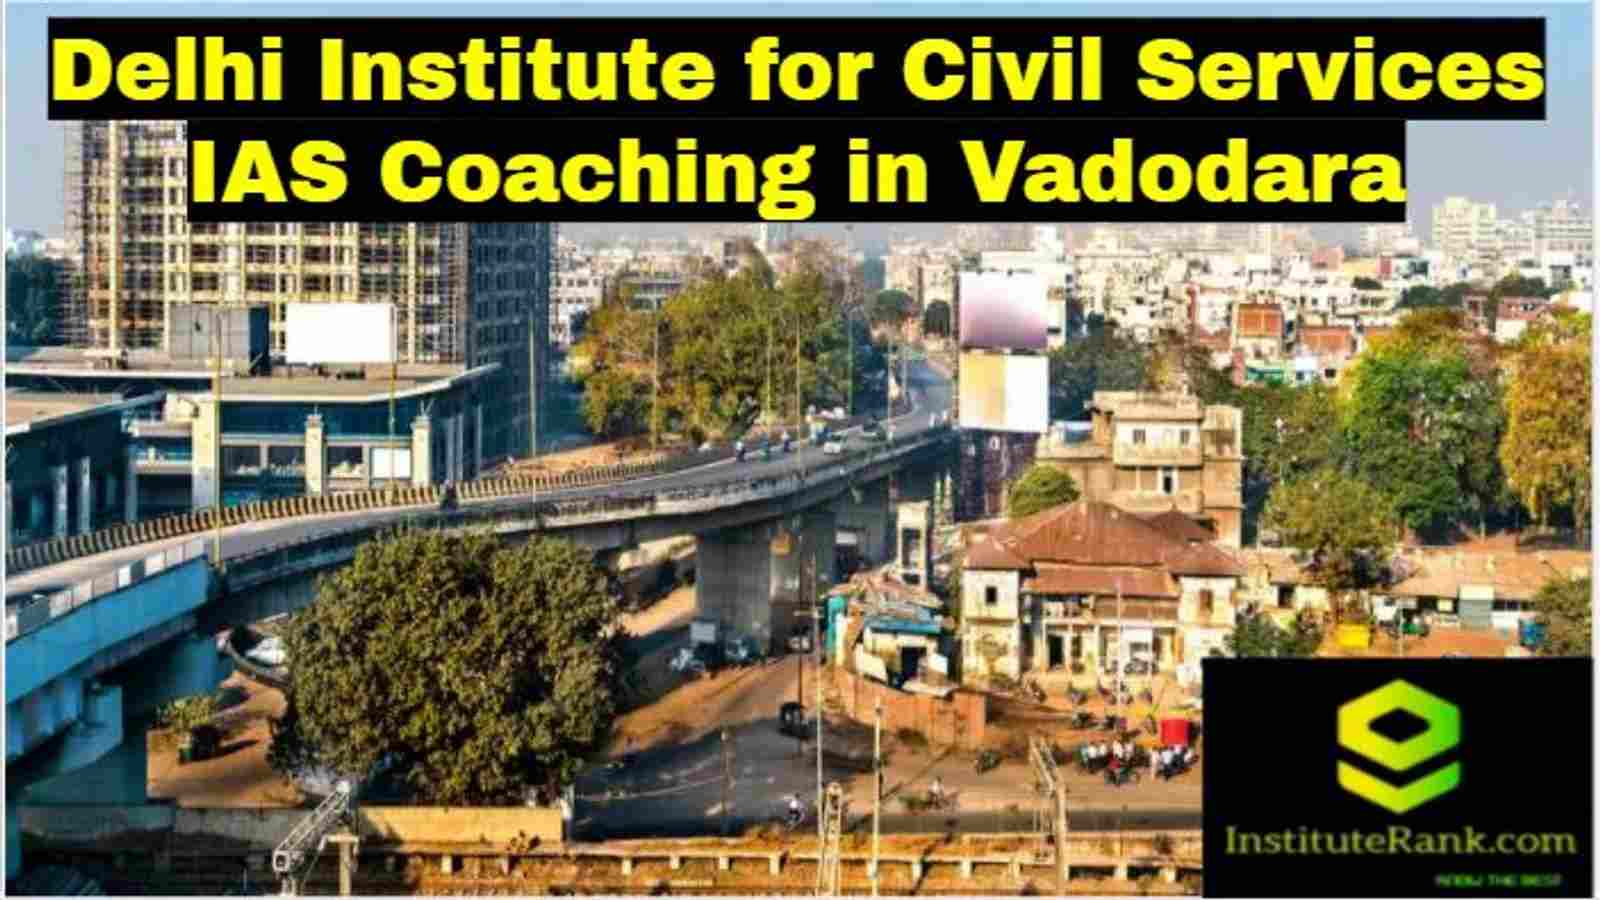 Delhi Institute for Civil Services IAS Coaching in Vadodara